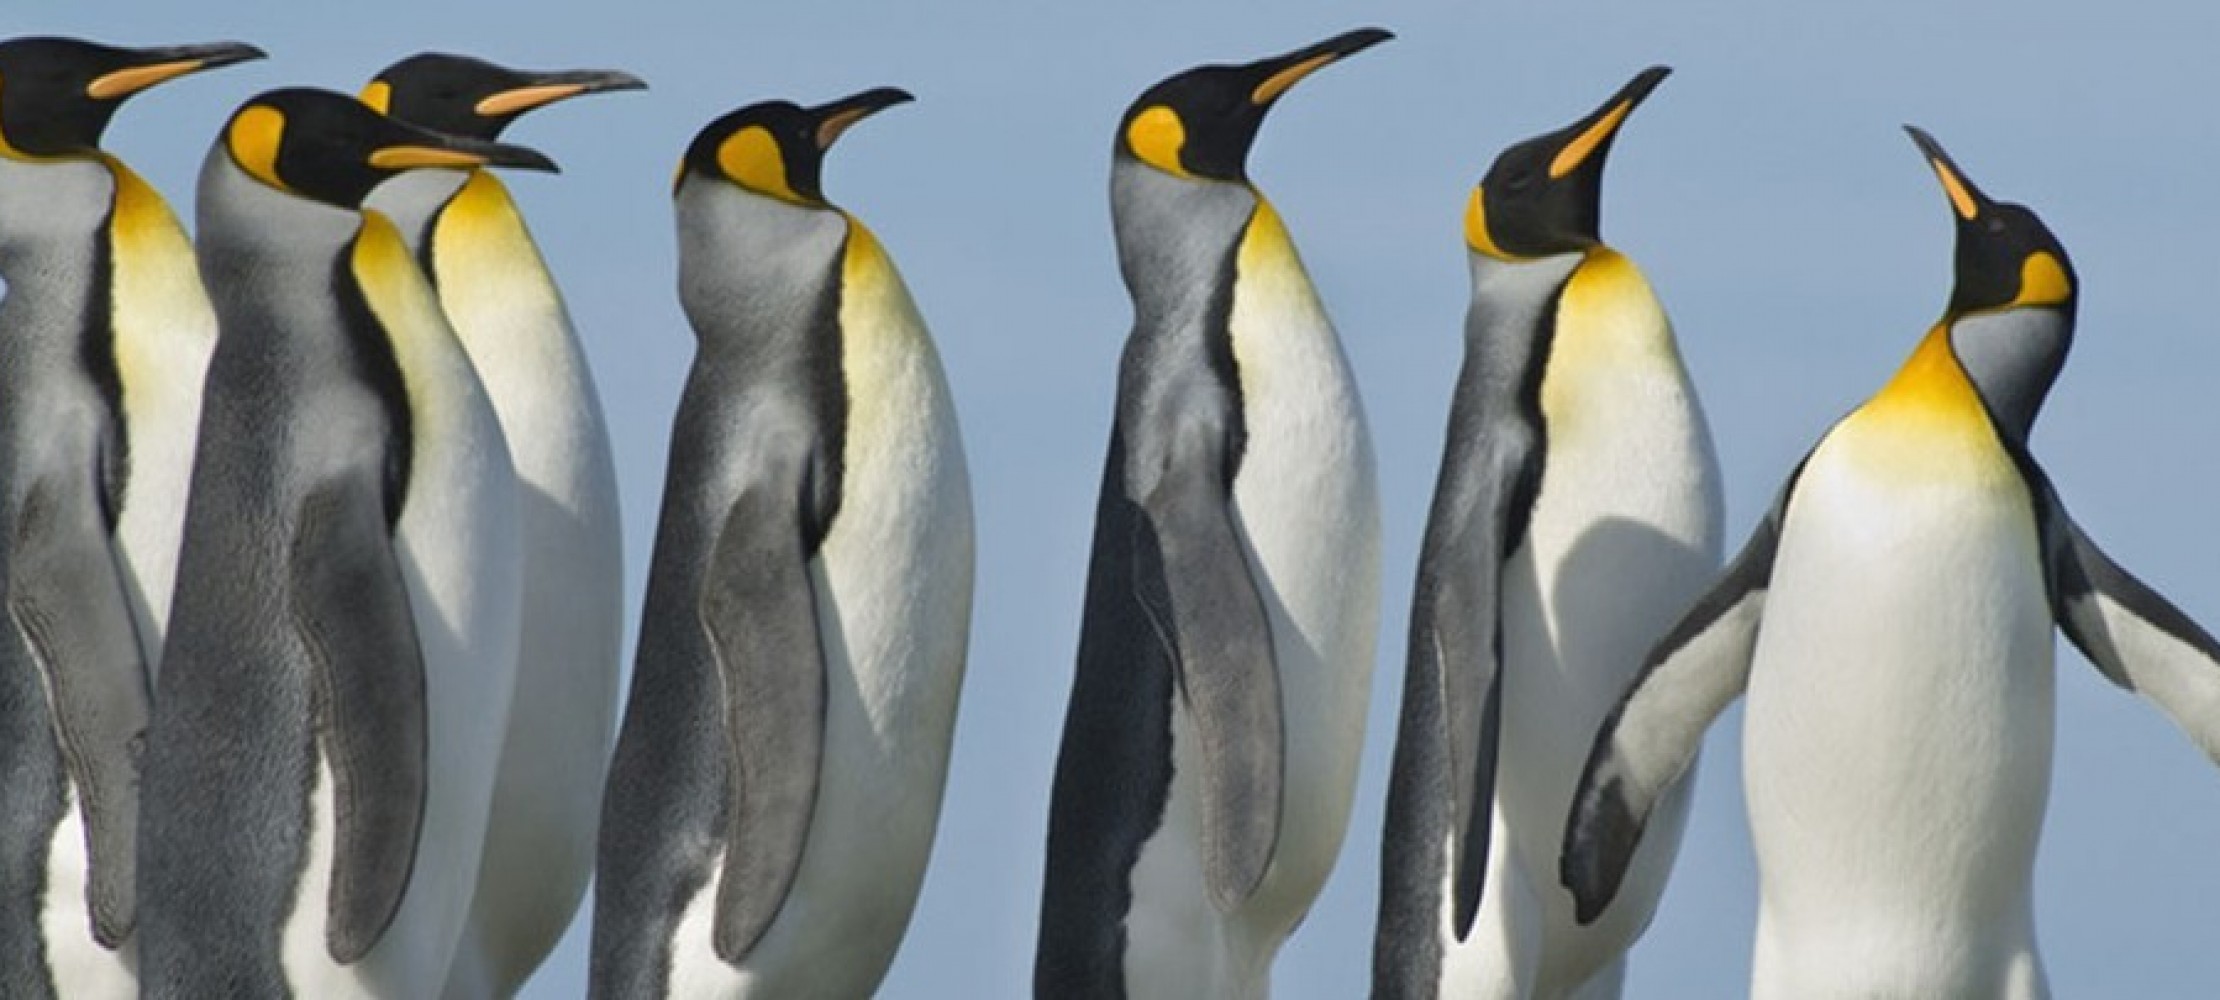 Kriegen Pinguine Kalte Füße? | Duda.News